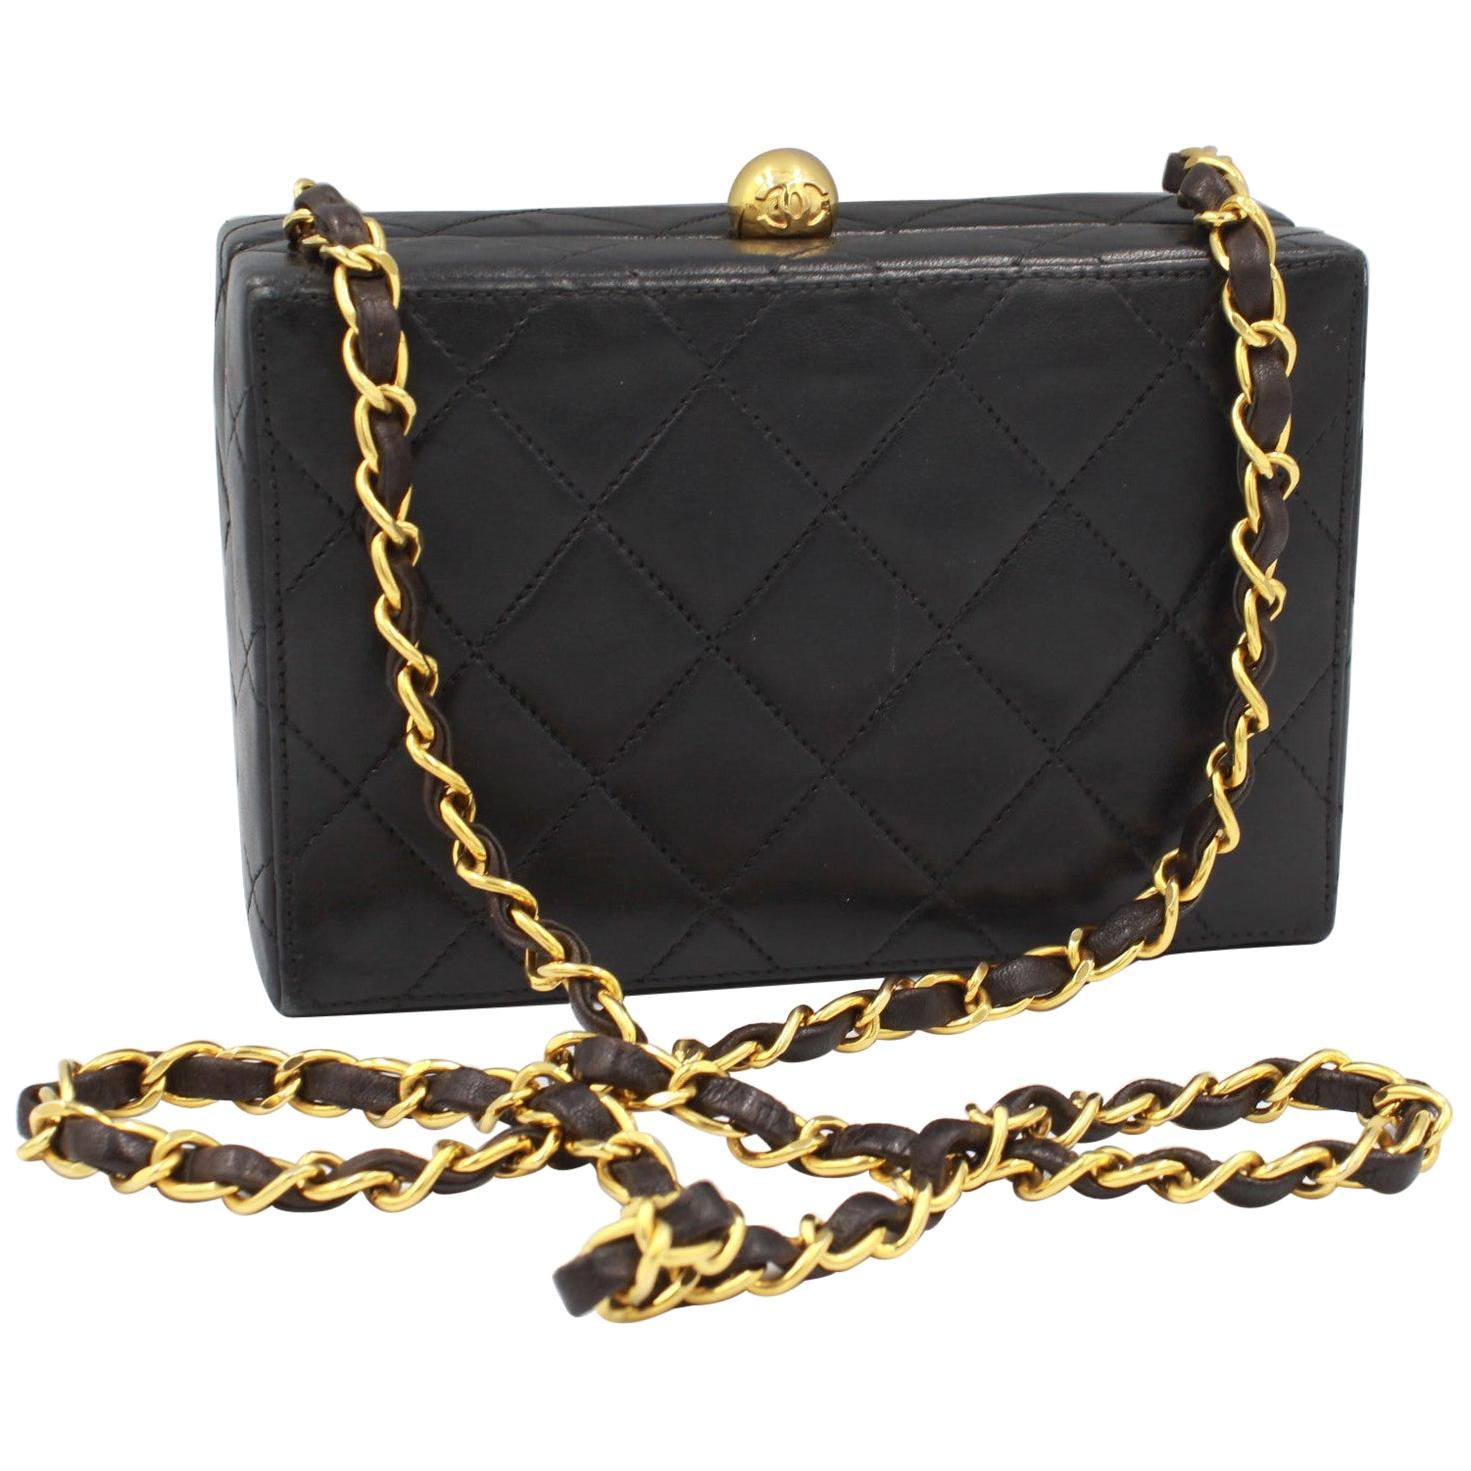 Chanel clutch shoulder bag in black leather